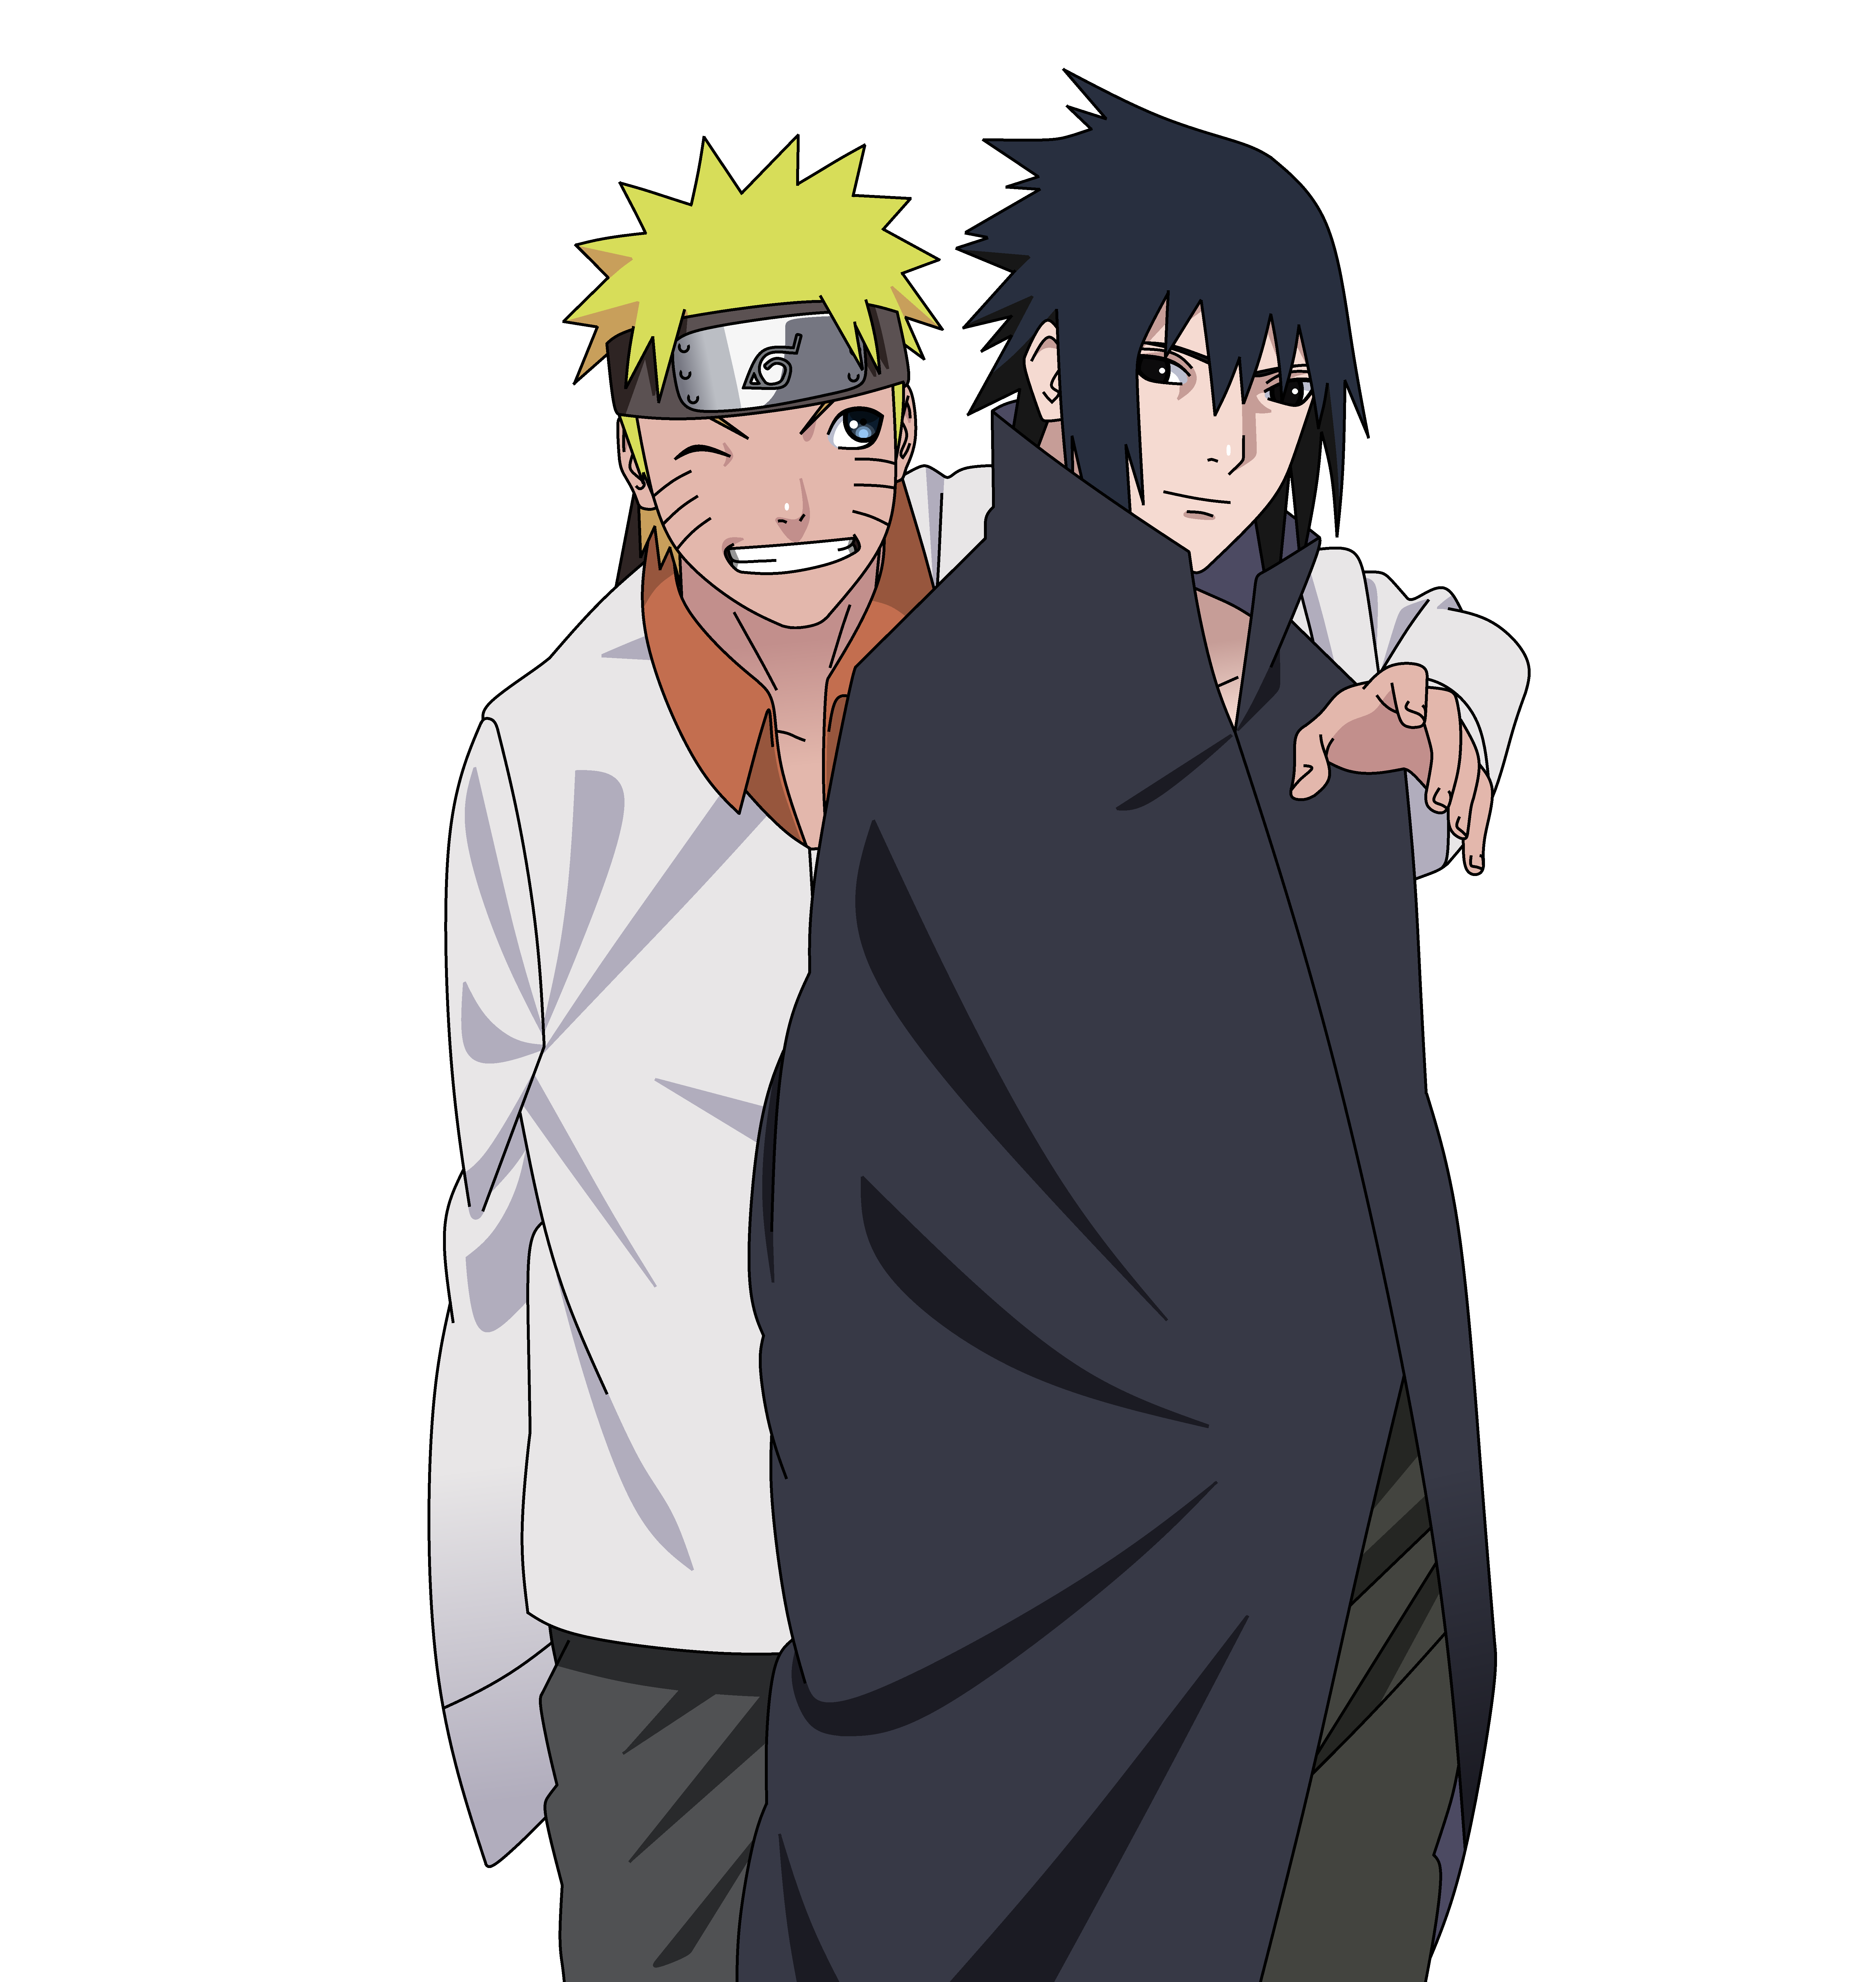 Nychse on DeviantArt  Naruto shippuden sasuke, Naruto, Naruto shippuden  anime